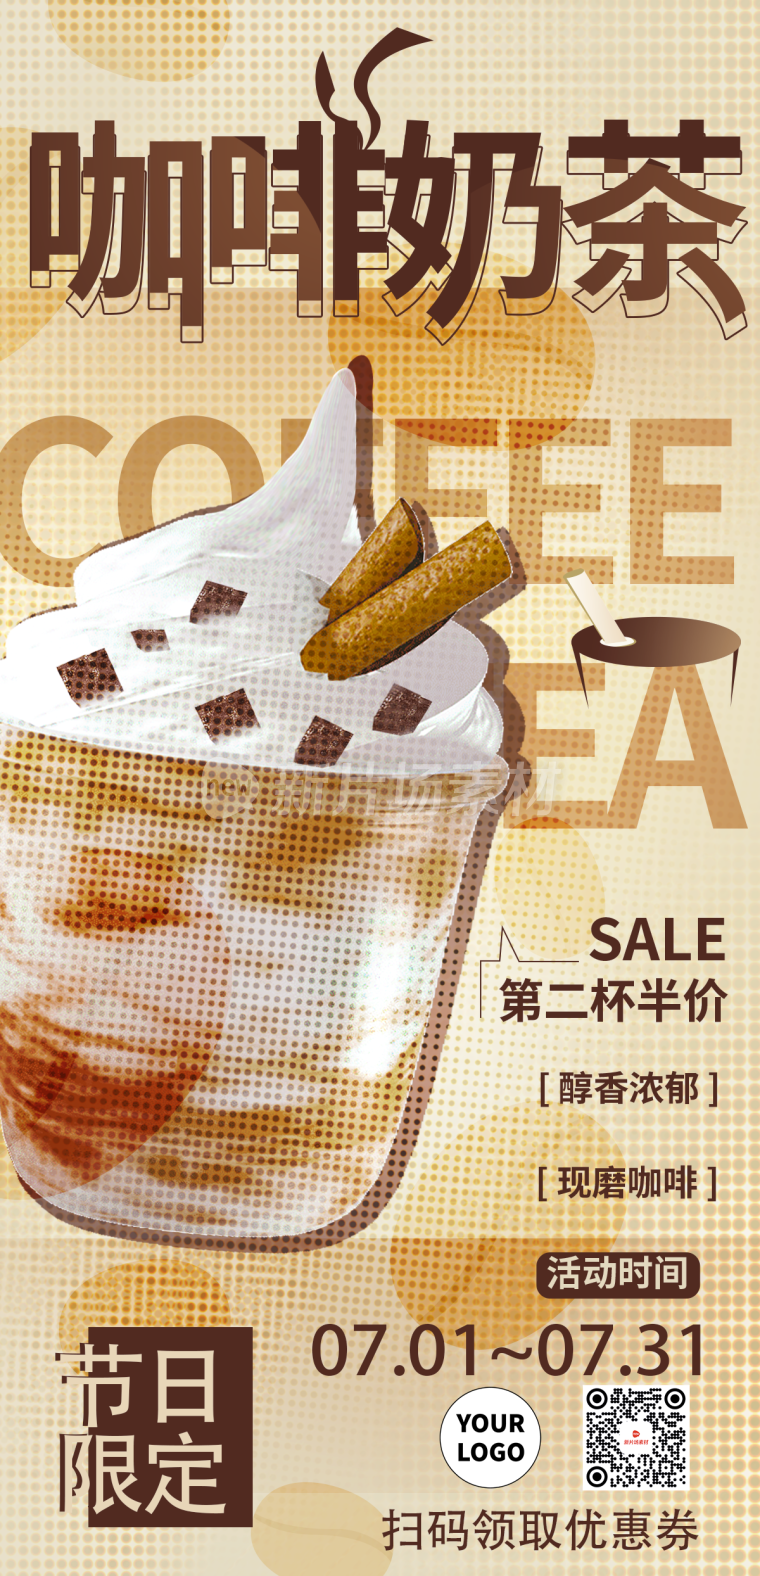 咖啡营销长图海报时尚简约风4